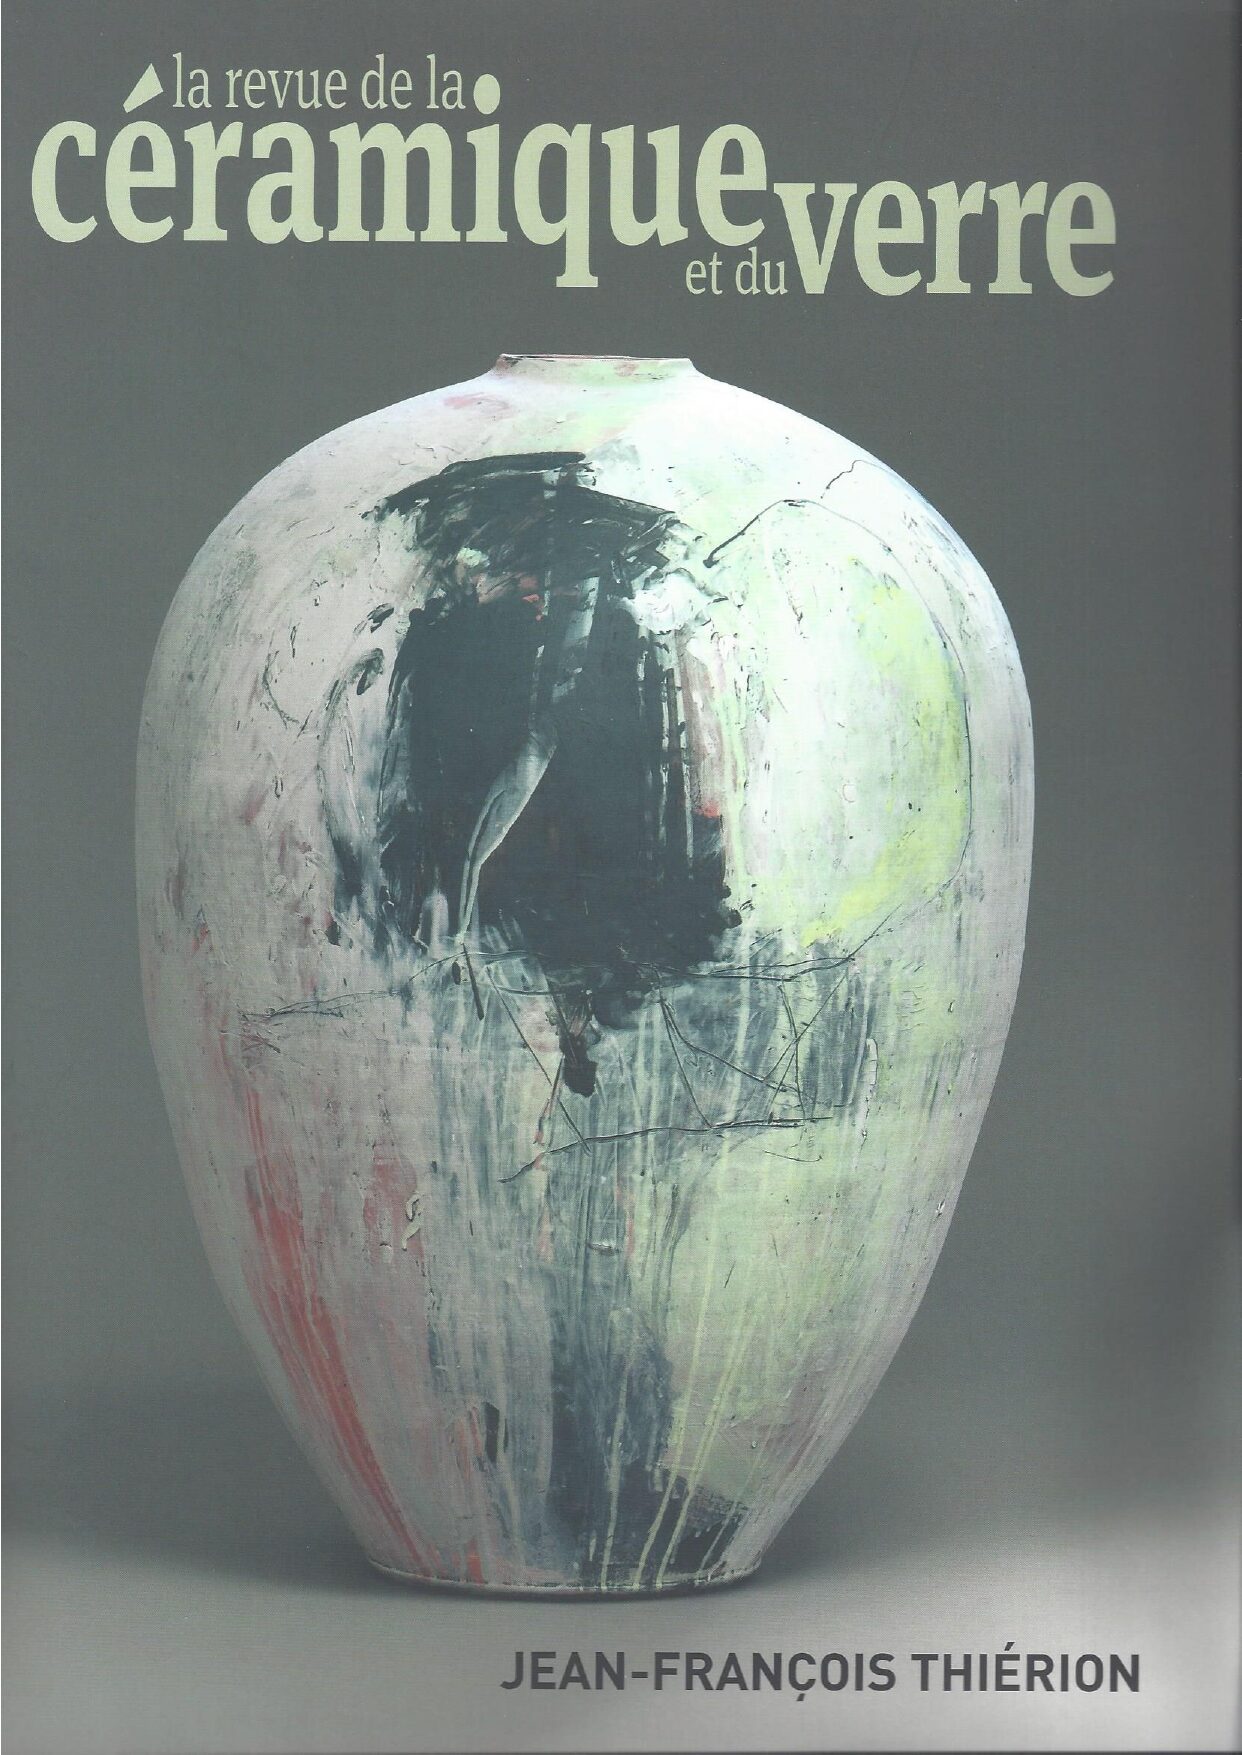 La revue de la céramique et du verre (France) n° 242 - 2022, "Françoise Dufayard, La beauté des engobes" de Dominique Poiret, p.84